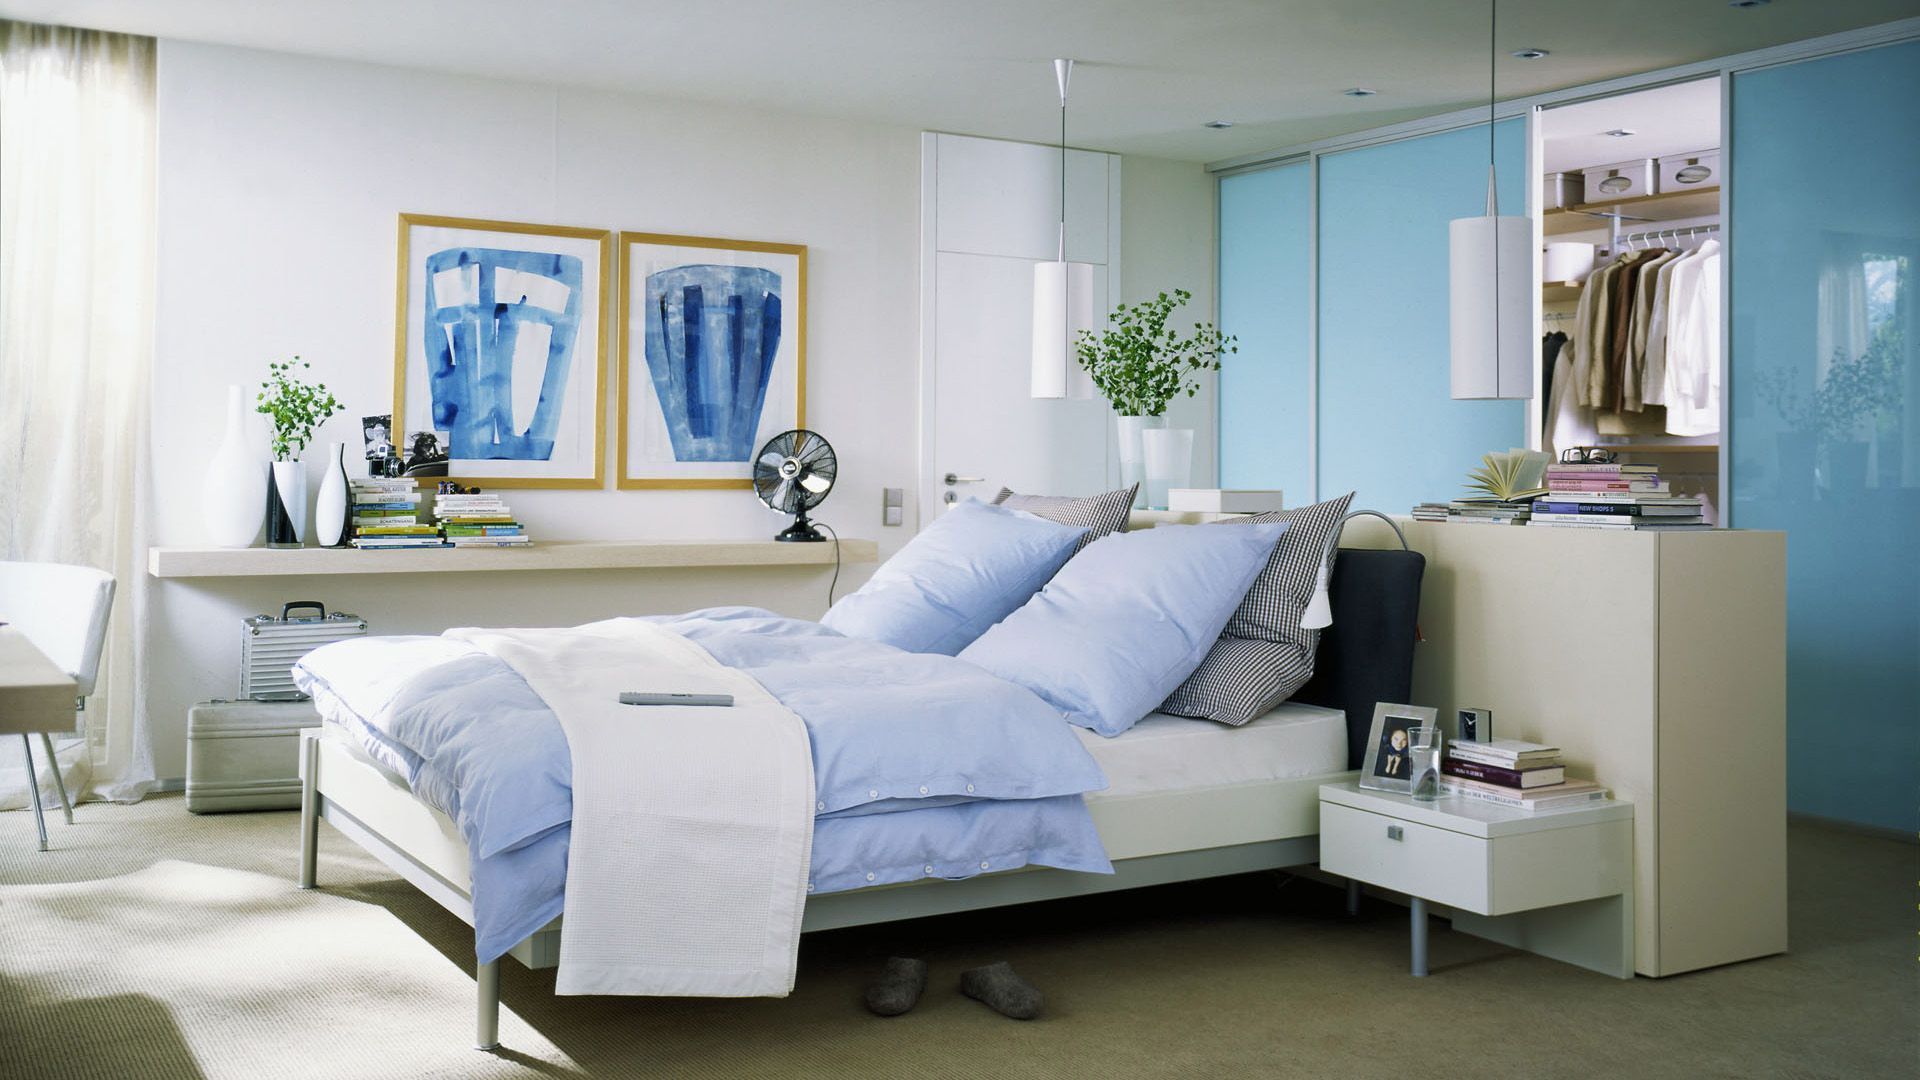 Duża sypialnia z ciekawie zagospodarowaną garderobą, która została usytuowana za wezgłowiem łóżka. Połączenie błękitu i bieli tworzy tu chłodną, ale przyjemną aranżację. Fot. Raumpuls